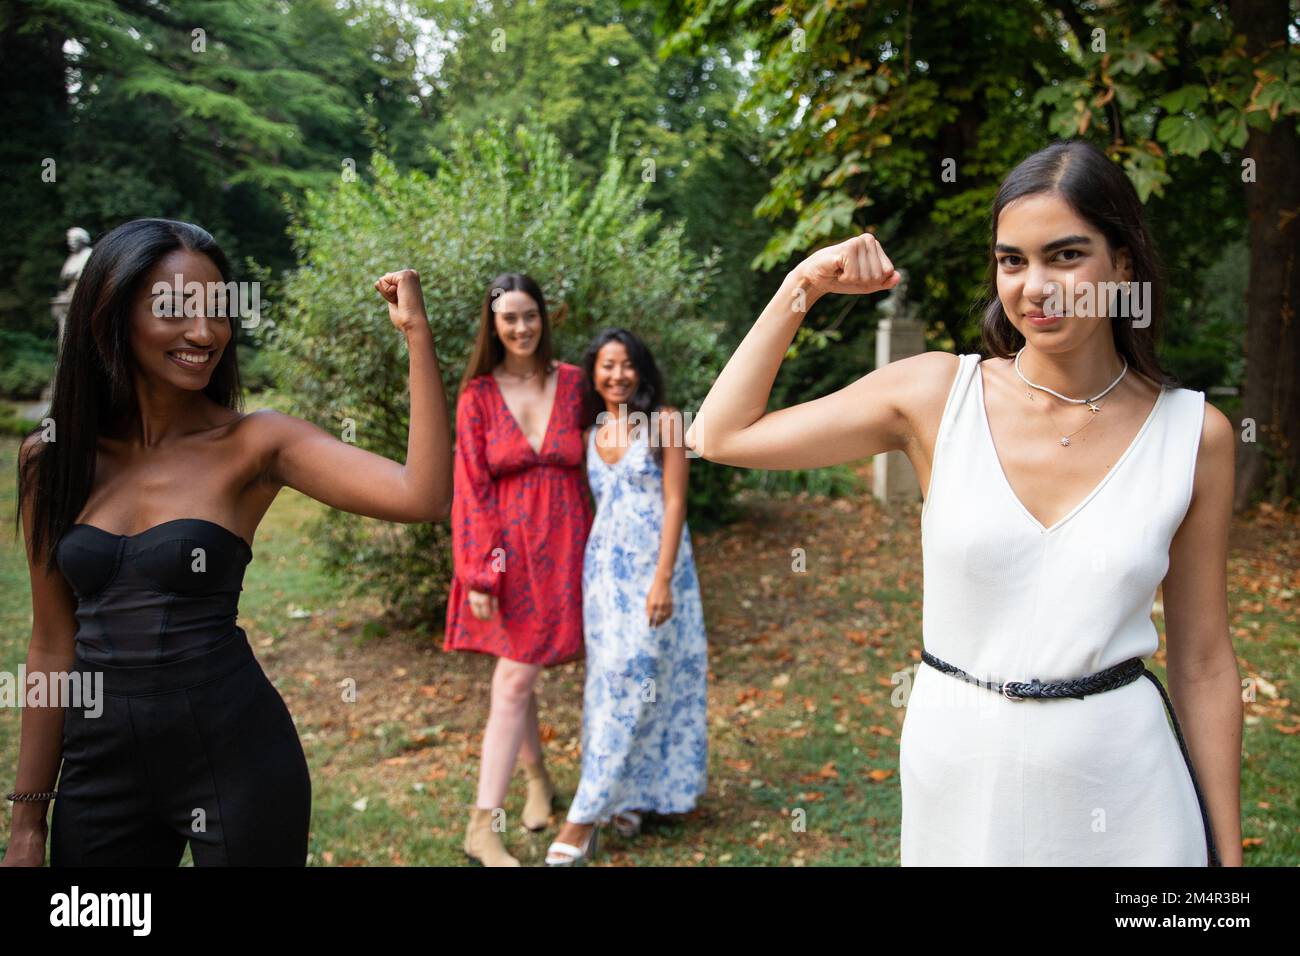 Deux amies montrent des biceps avec deux amies féminines derrière les regarder, le concept d'autonomisation des femmes Banque D'Images